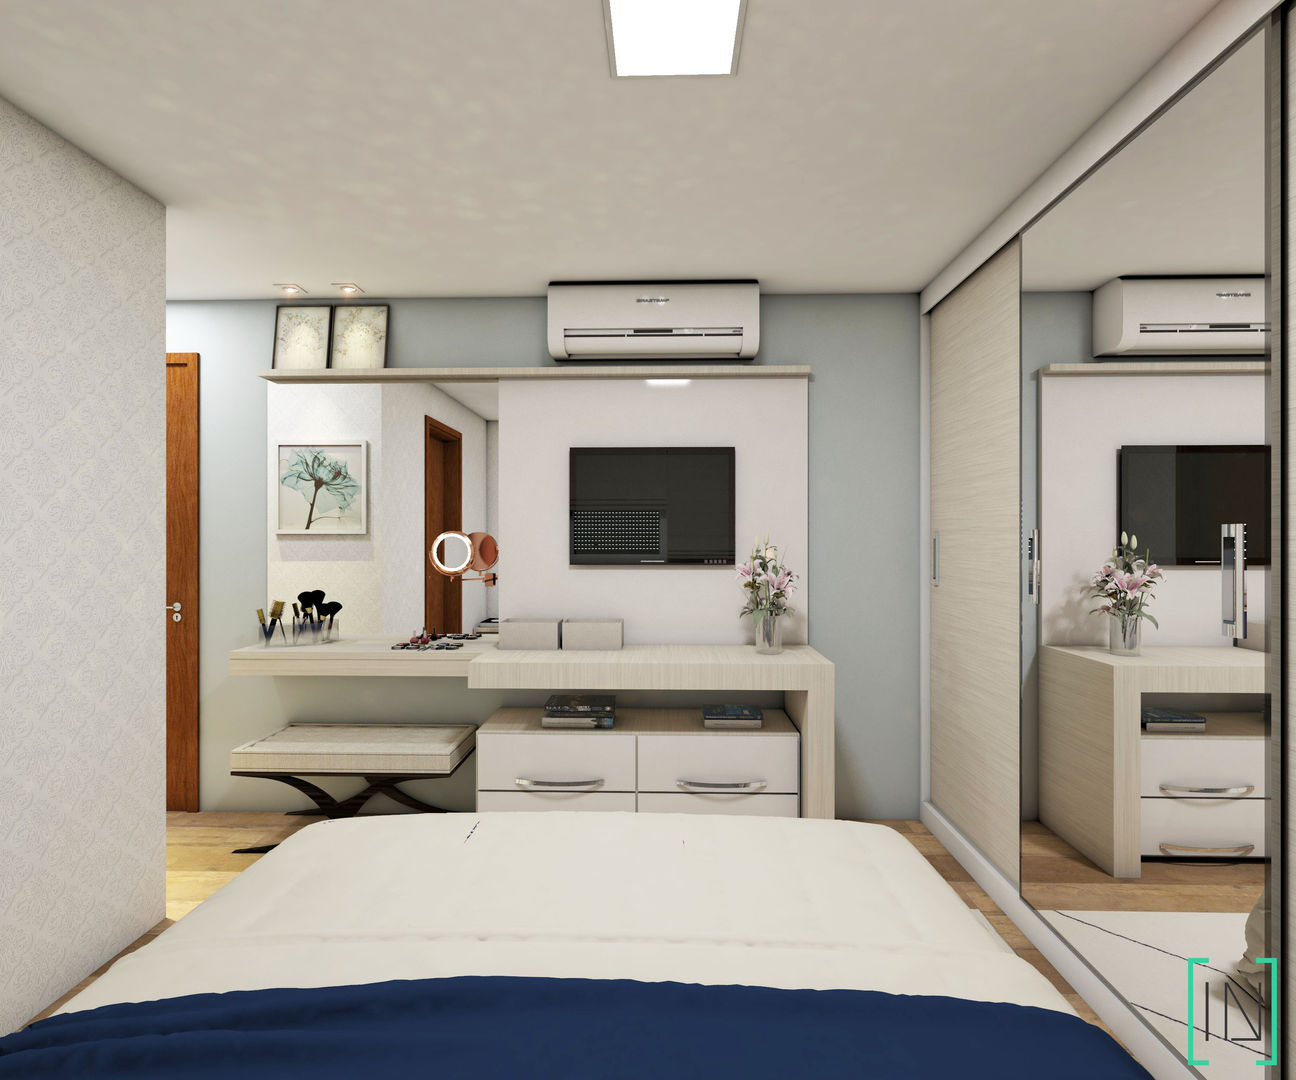 Apartamento de Casal, INOVE ARQUITETURA INOVE ARQUITETURA Dormitorios de estilo moderno